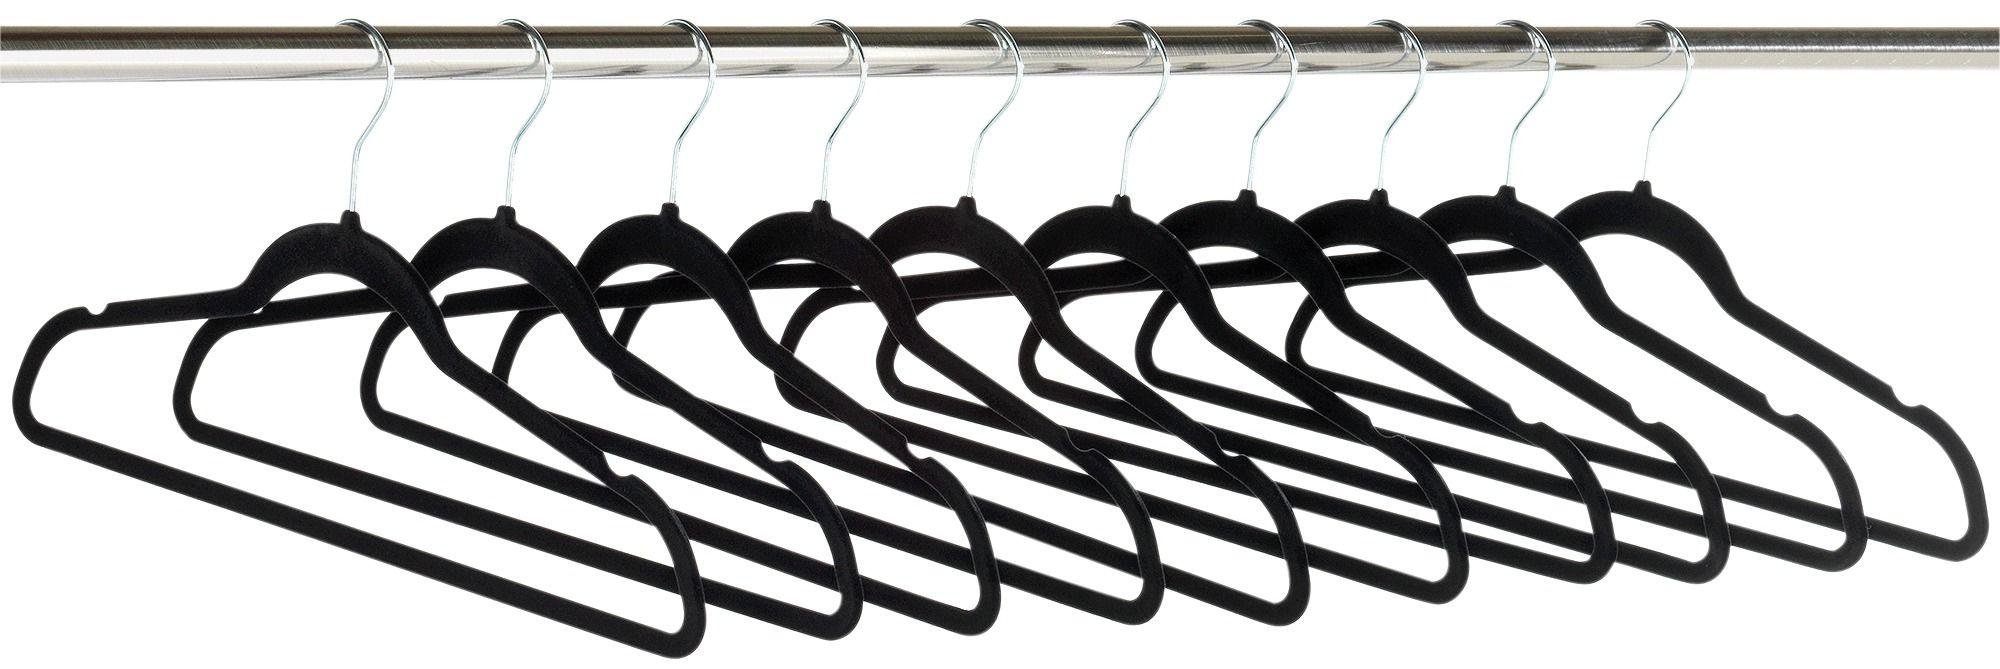 childrens hangers argos